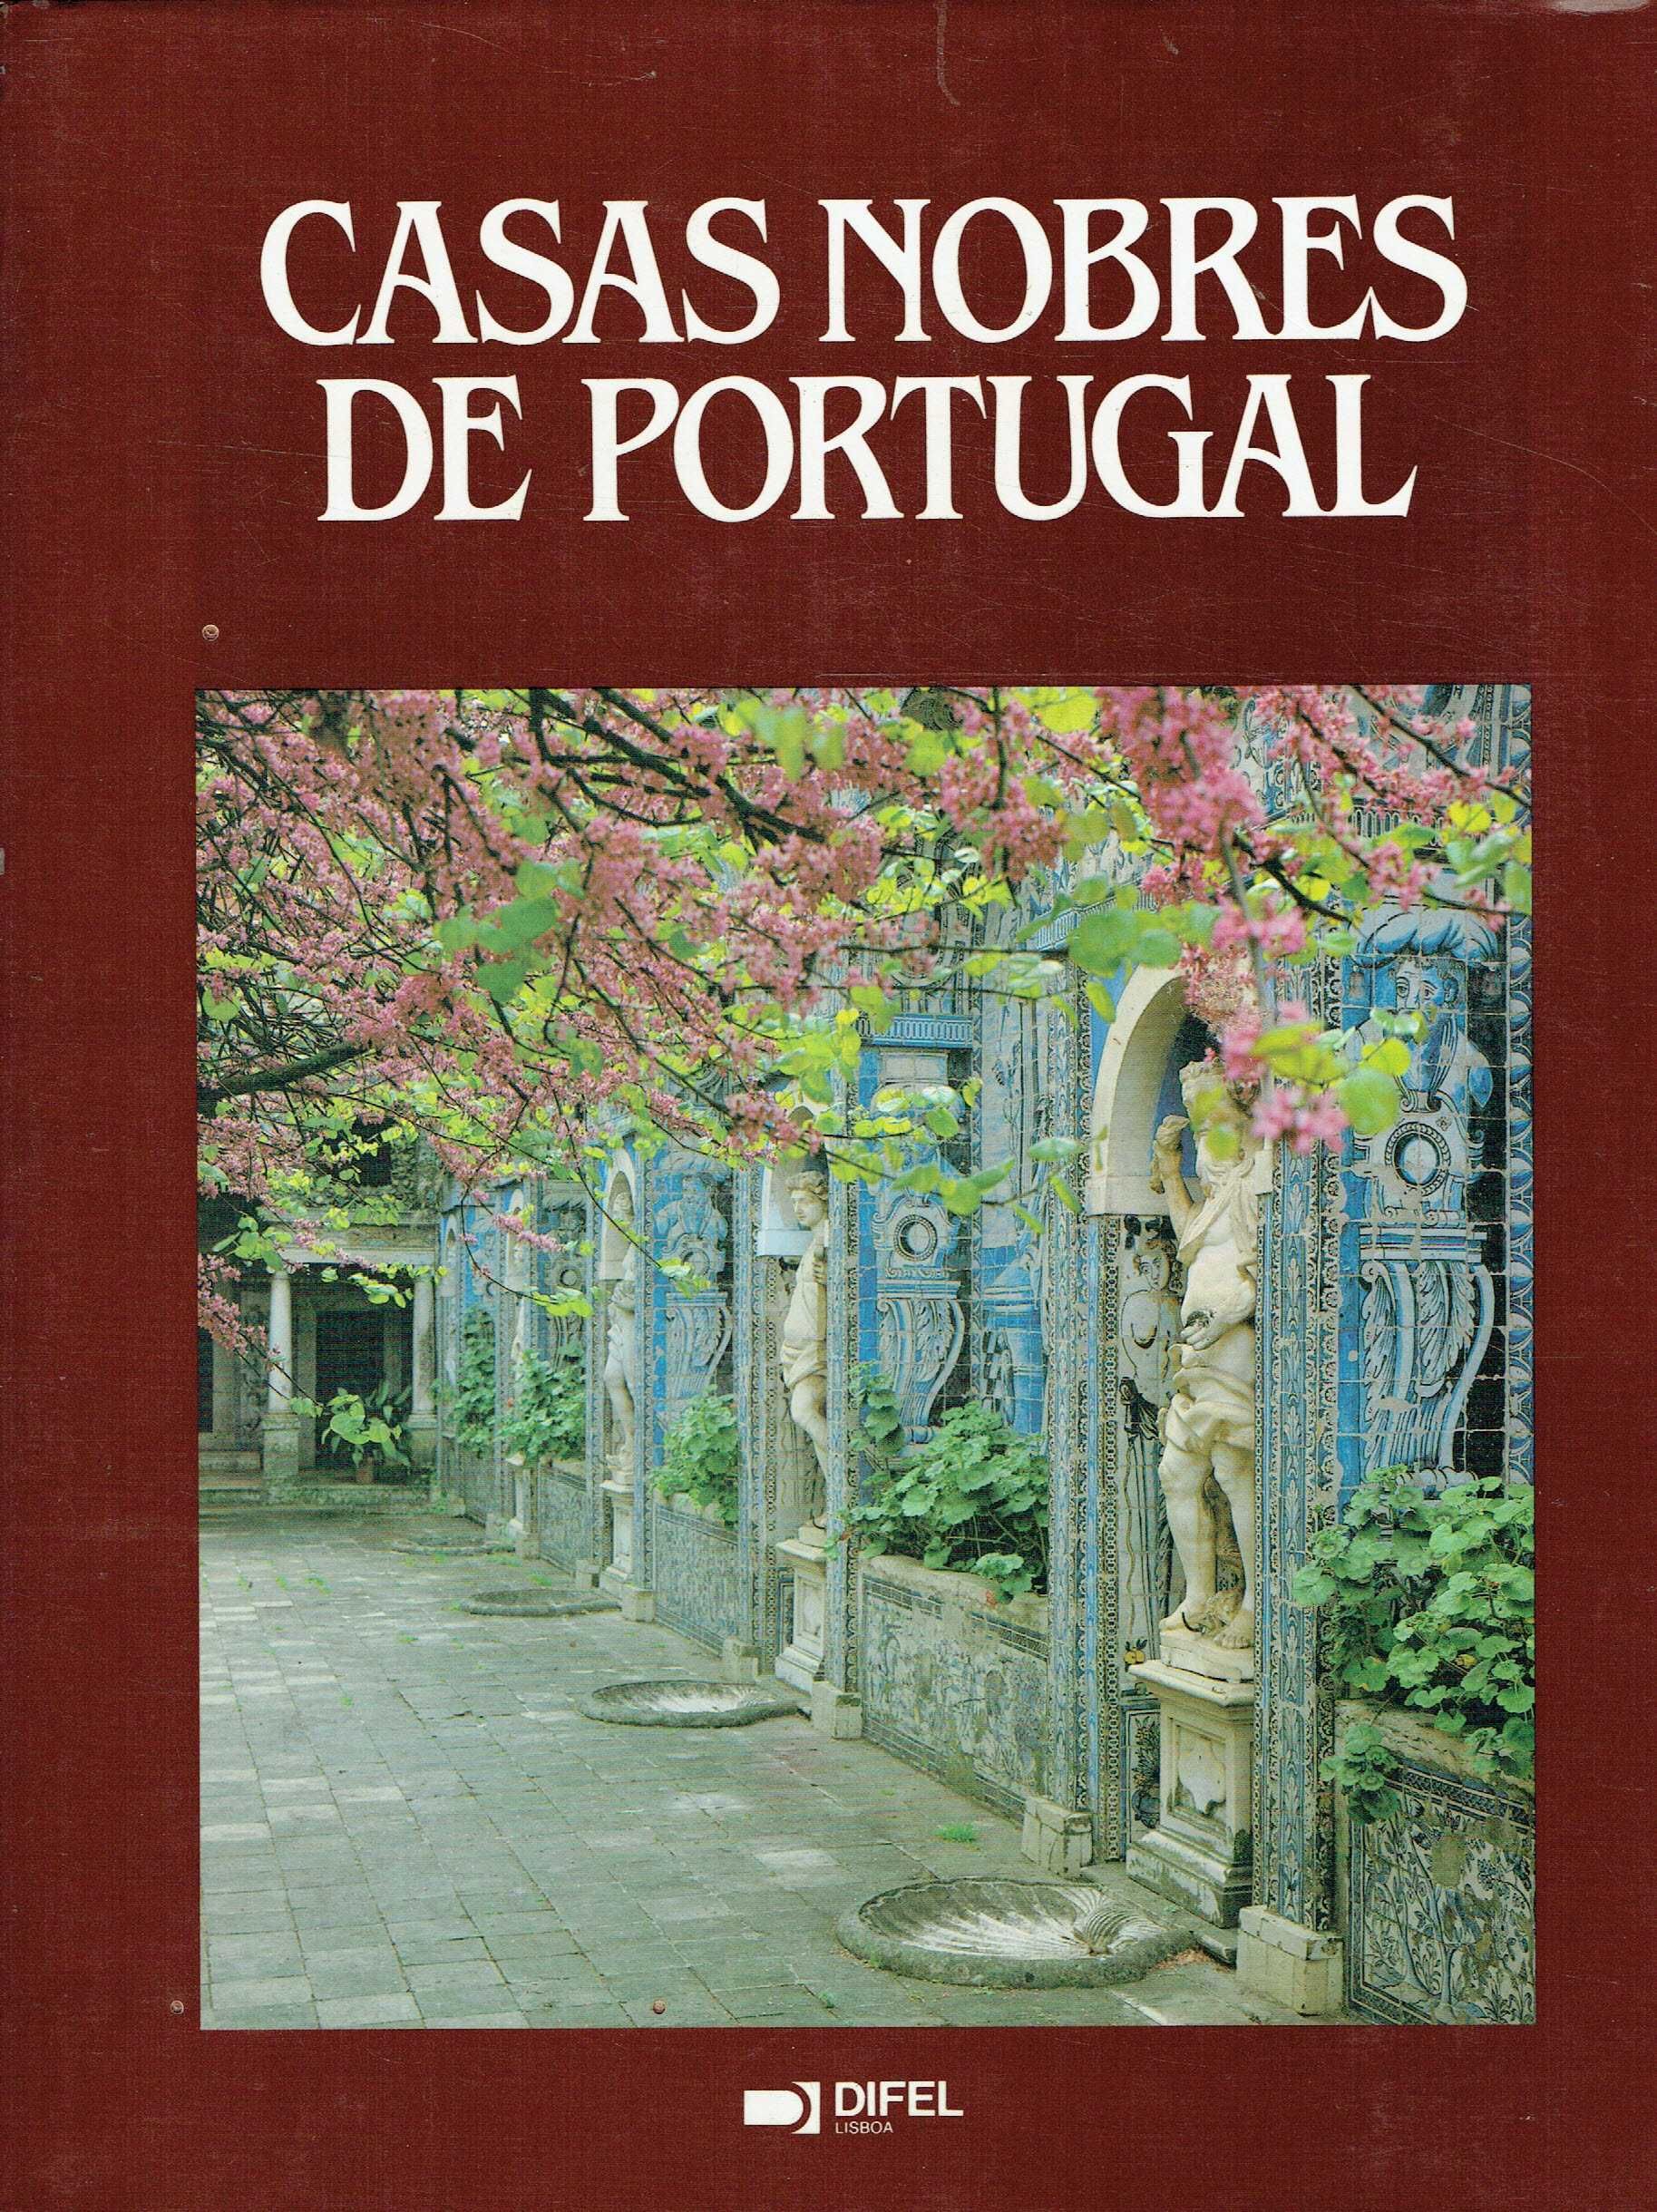 14938

Casas Nobres de Portugal
de Marcus Binney e Nicolas Sapieha